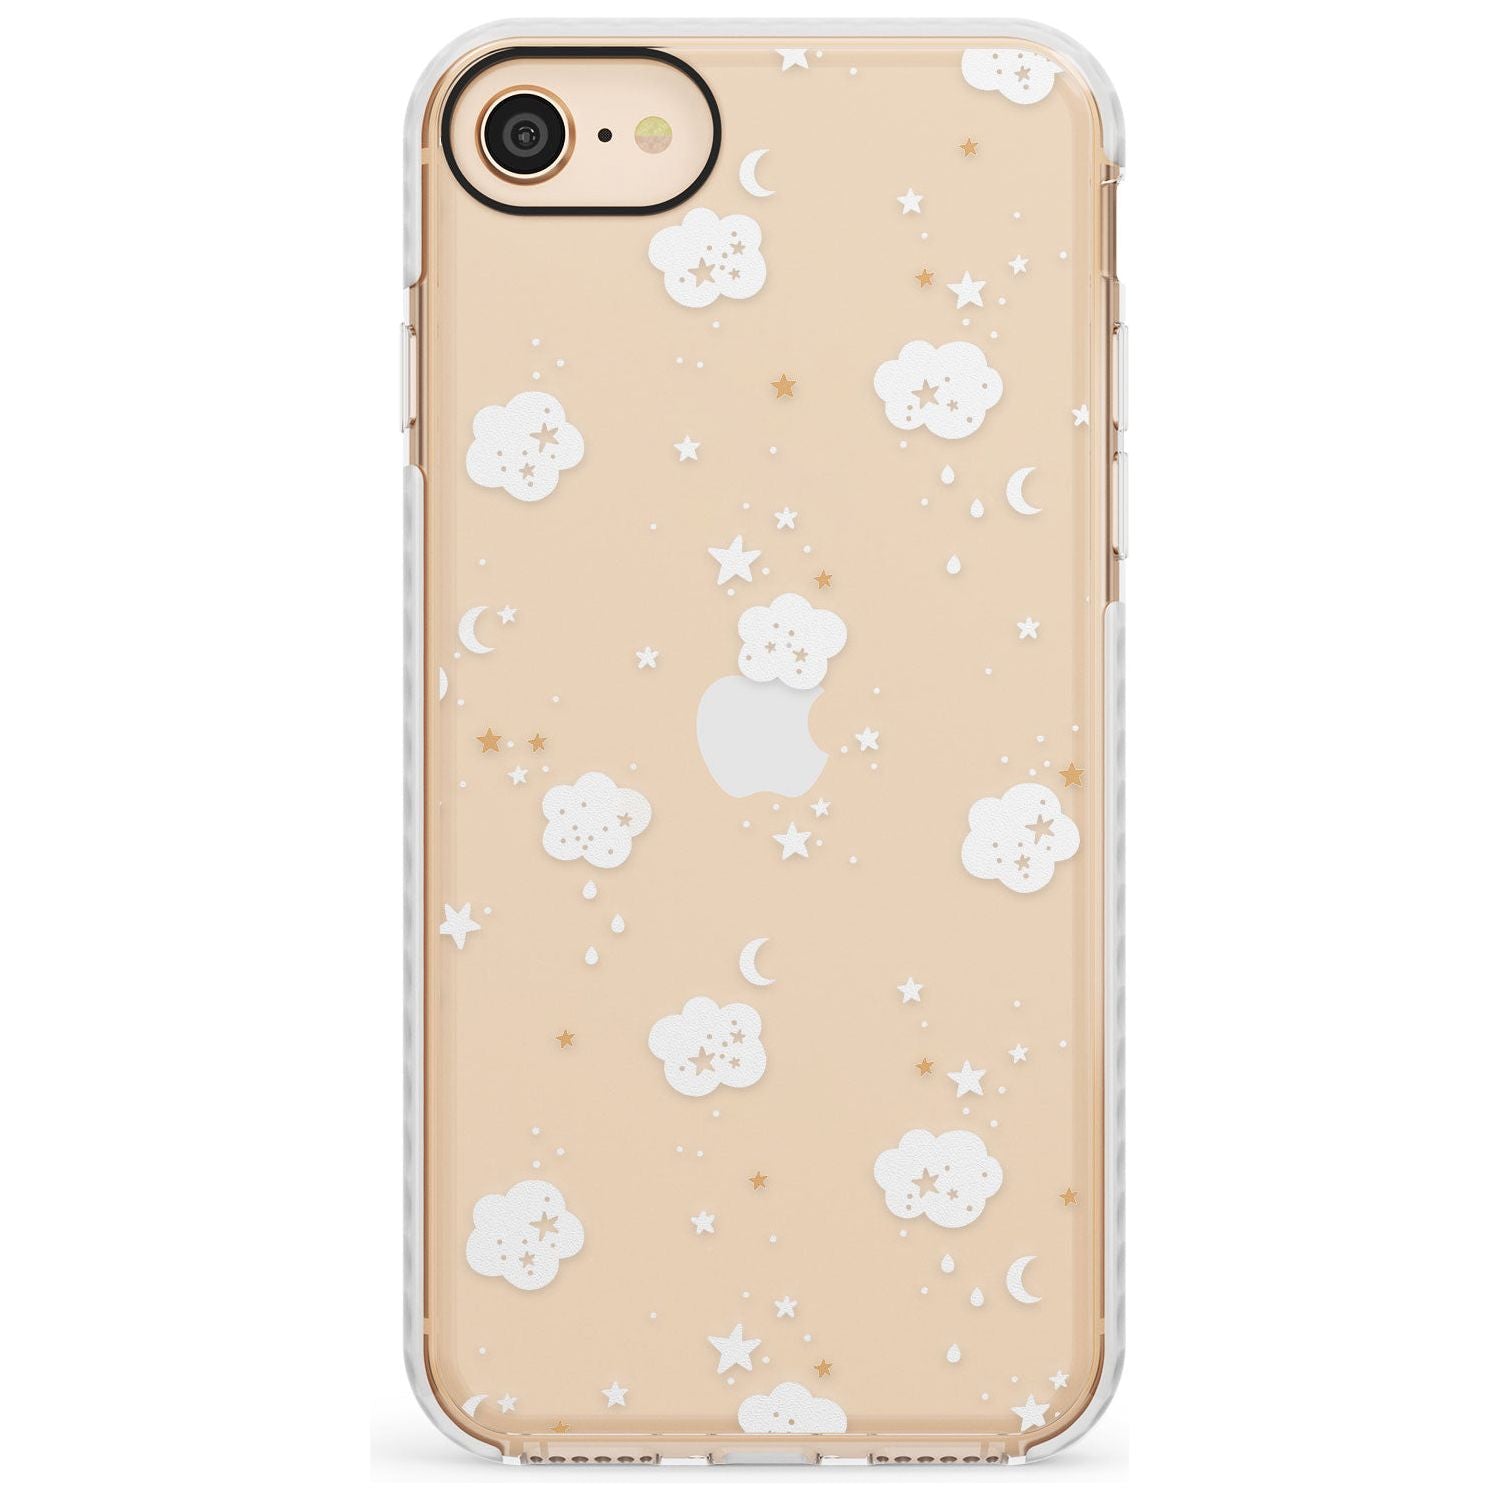 Stars & Clouds Slim TPU Phone Case for iPhone SE 8 7 Plus